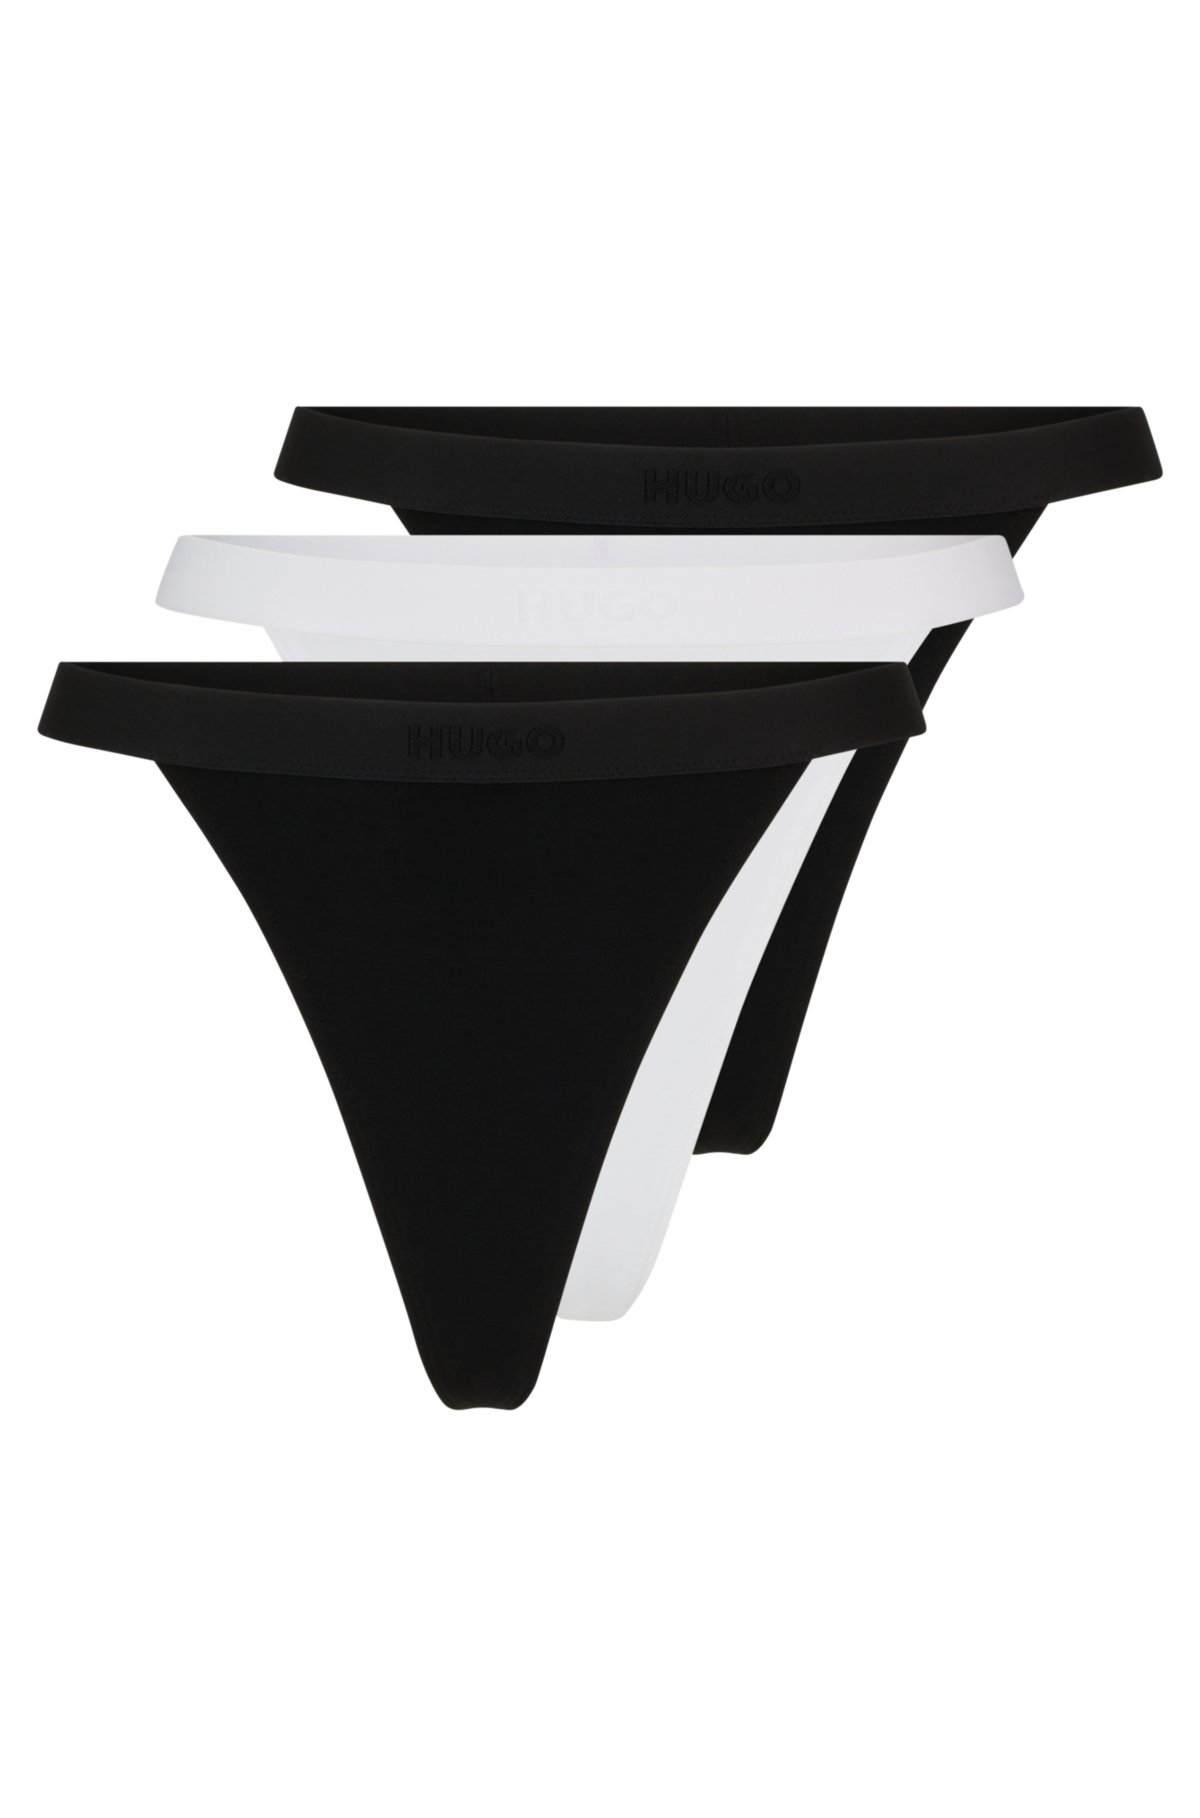 Armachillo Black Brief Underwear Women's Size 2X NEW - beyond exchange